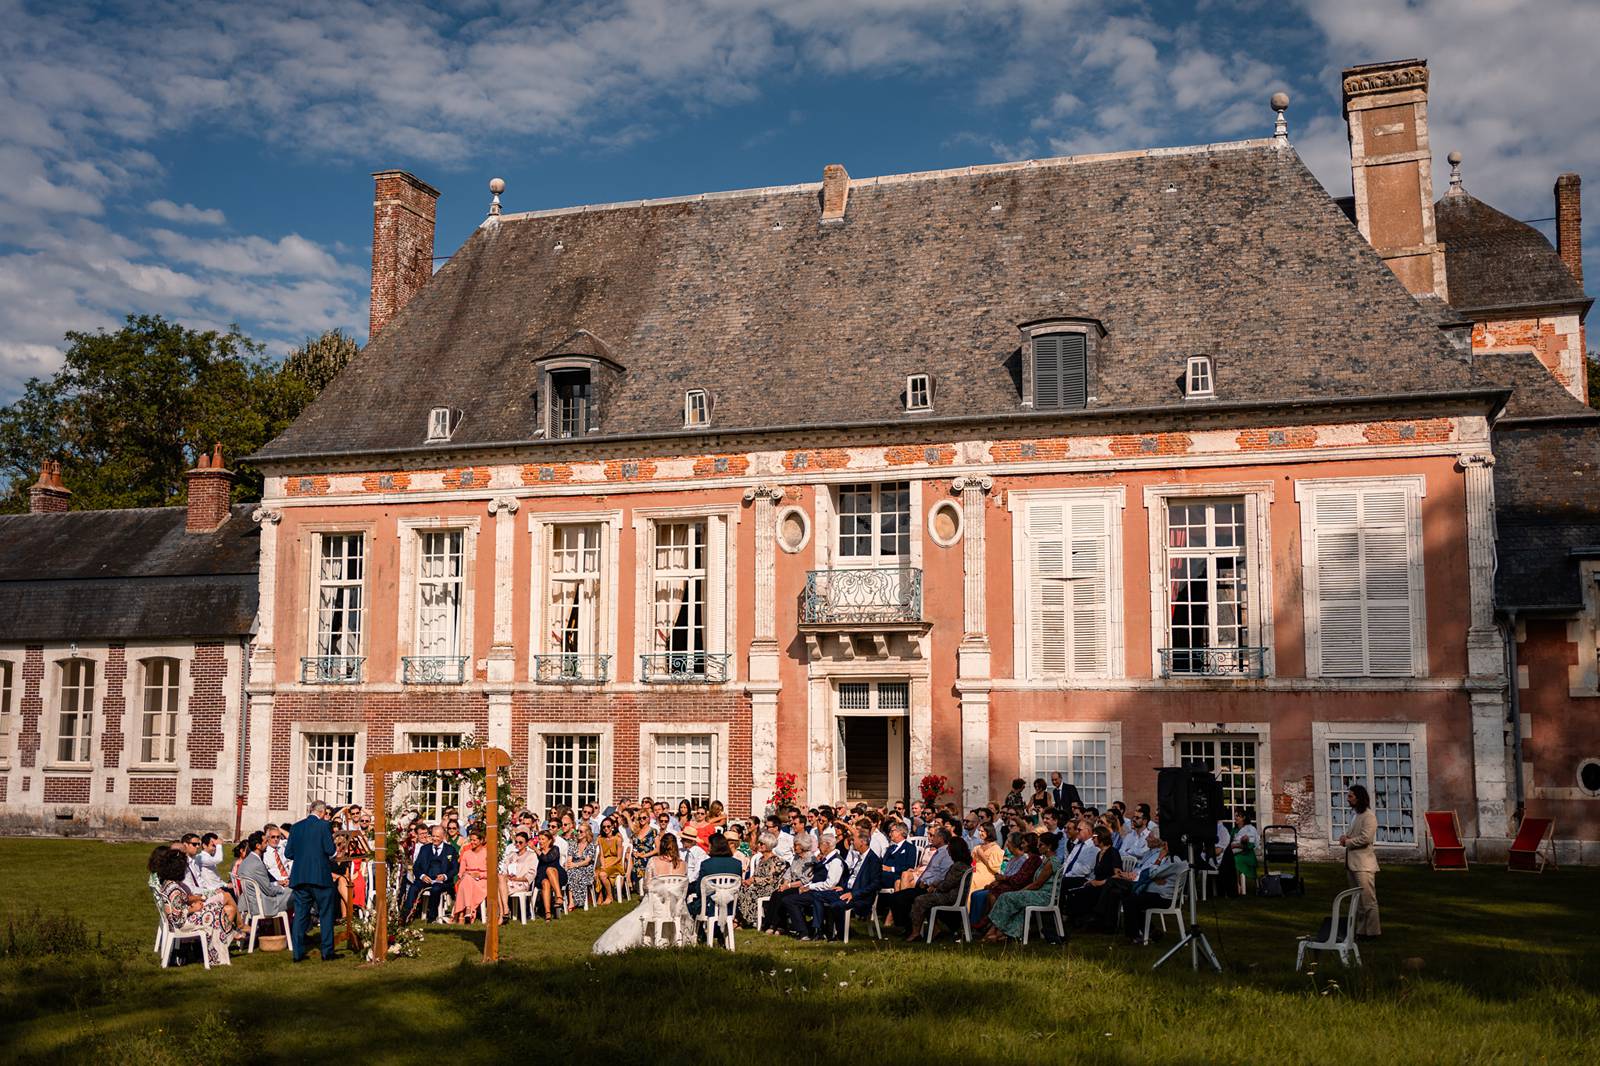 Mariage laïque au Château de Bonnemare en Normandie. Cérémonie laïque extérieure au château. Alexandre Roschewitz photographe mariage.